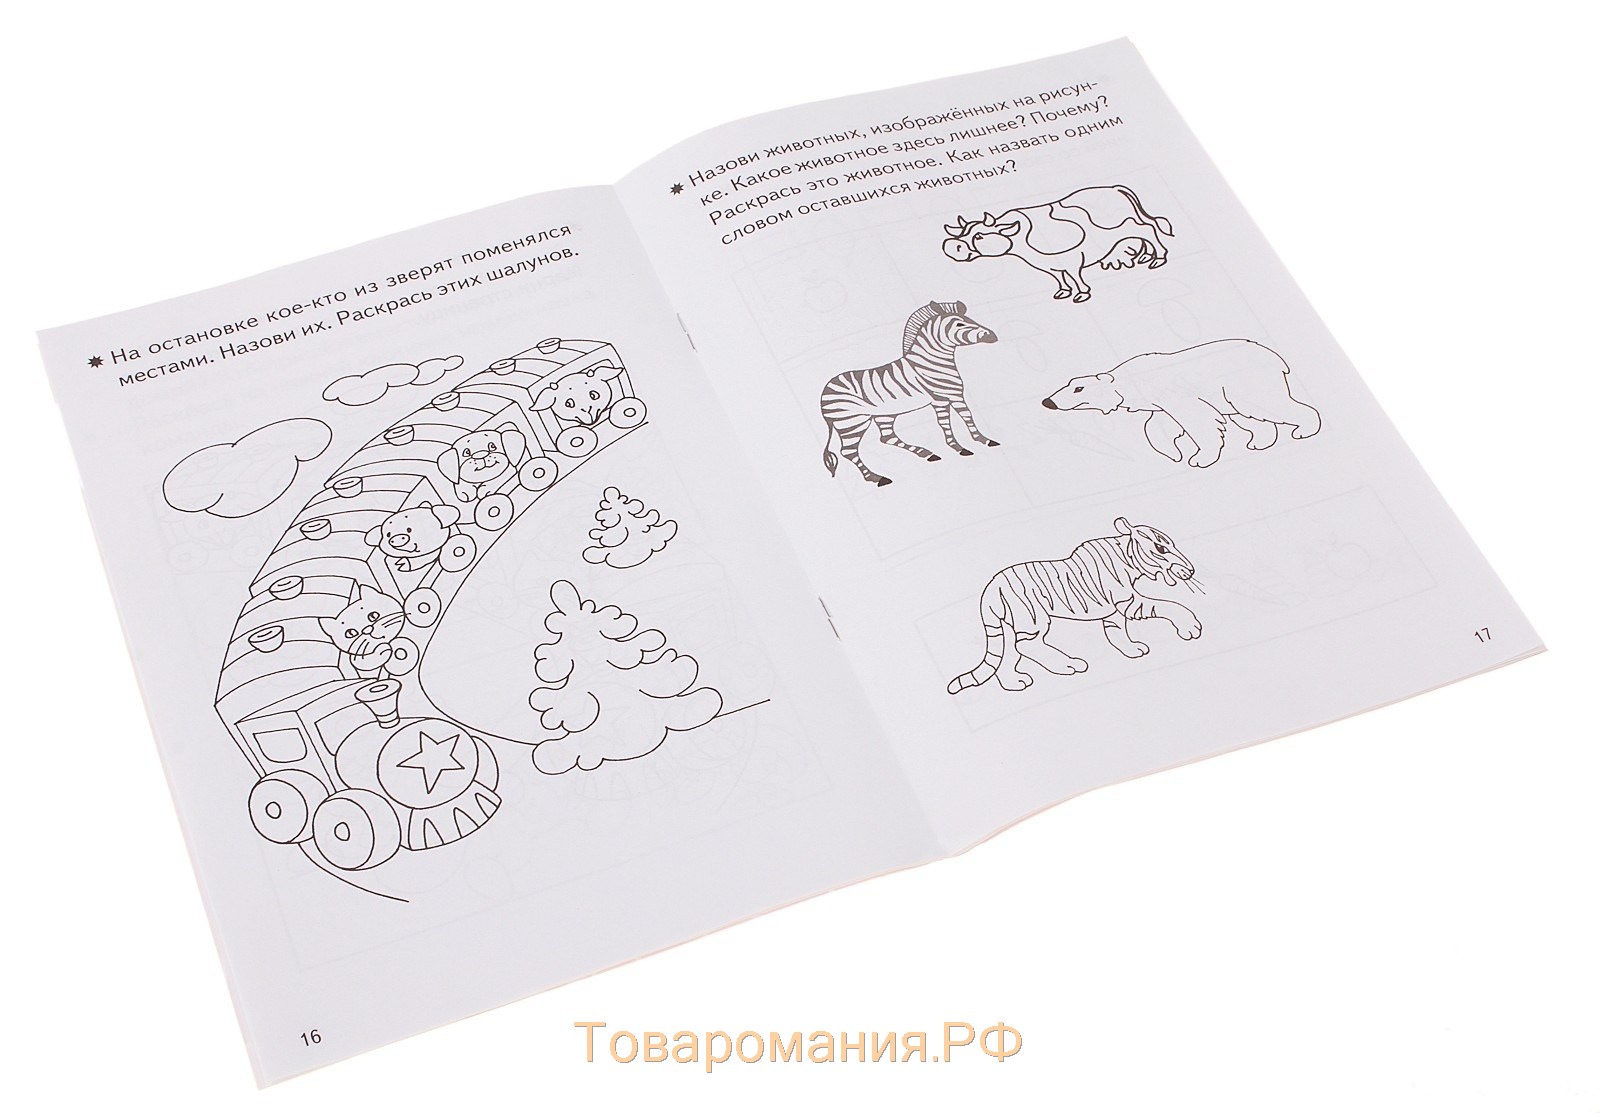 Рабочая тетрадь для детей 3-4 лет «Развиваем внимание и логическое мышление», Бортникова Е.